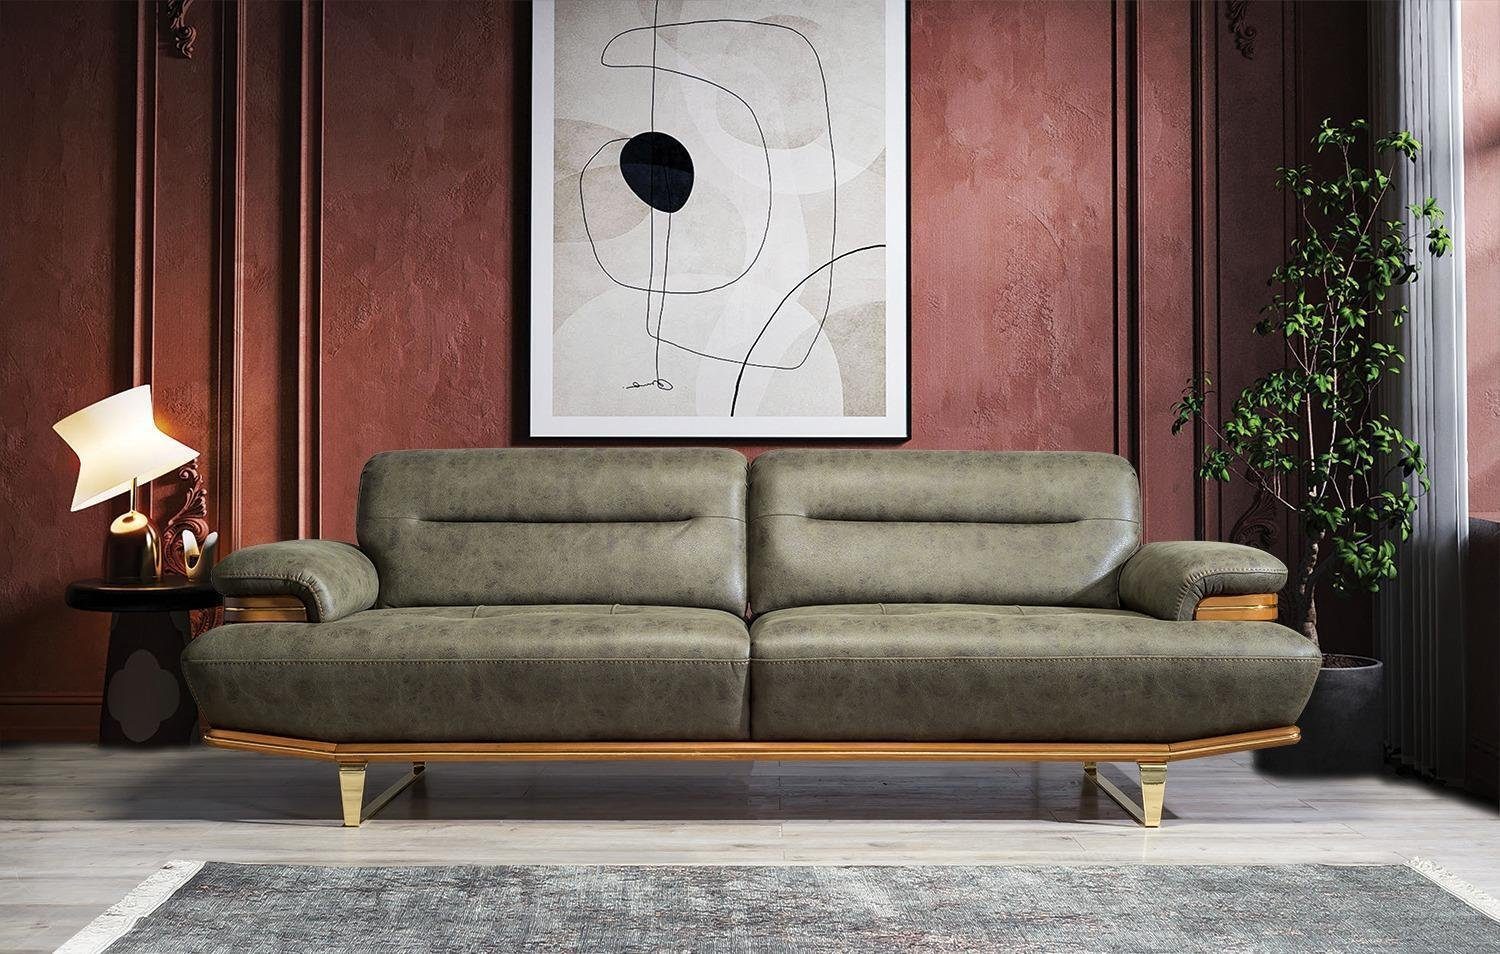 JVmoebel Sofa Dreisitzer Sofa Couch Modern Möbel Wohnzimmer Einrichtung Polster, 1 Teile, Made in Europa